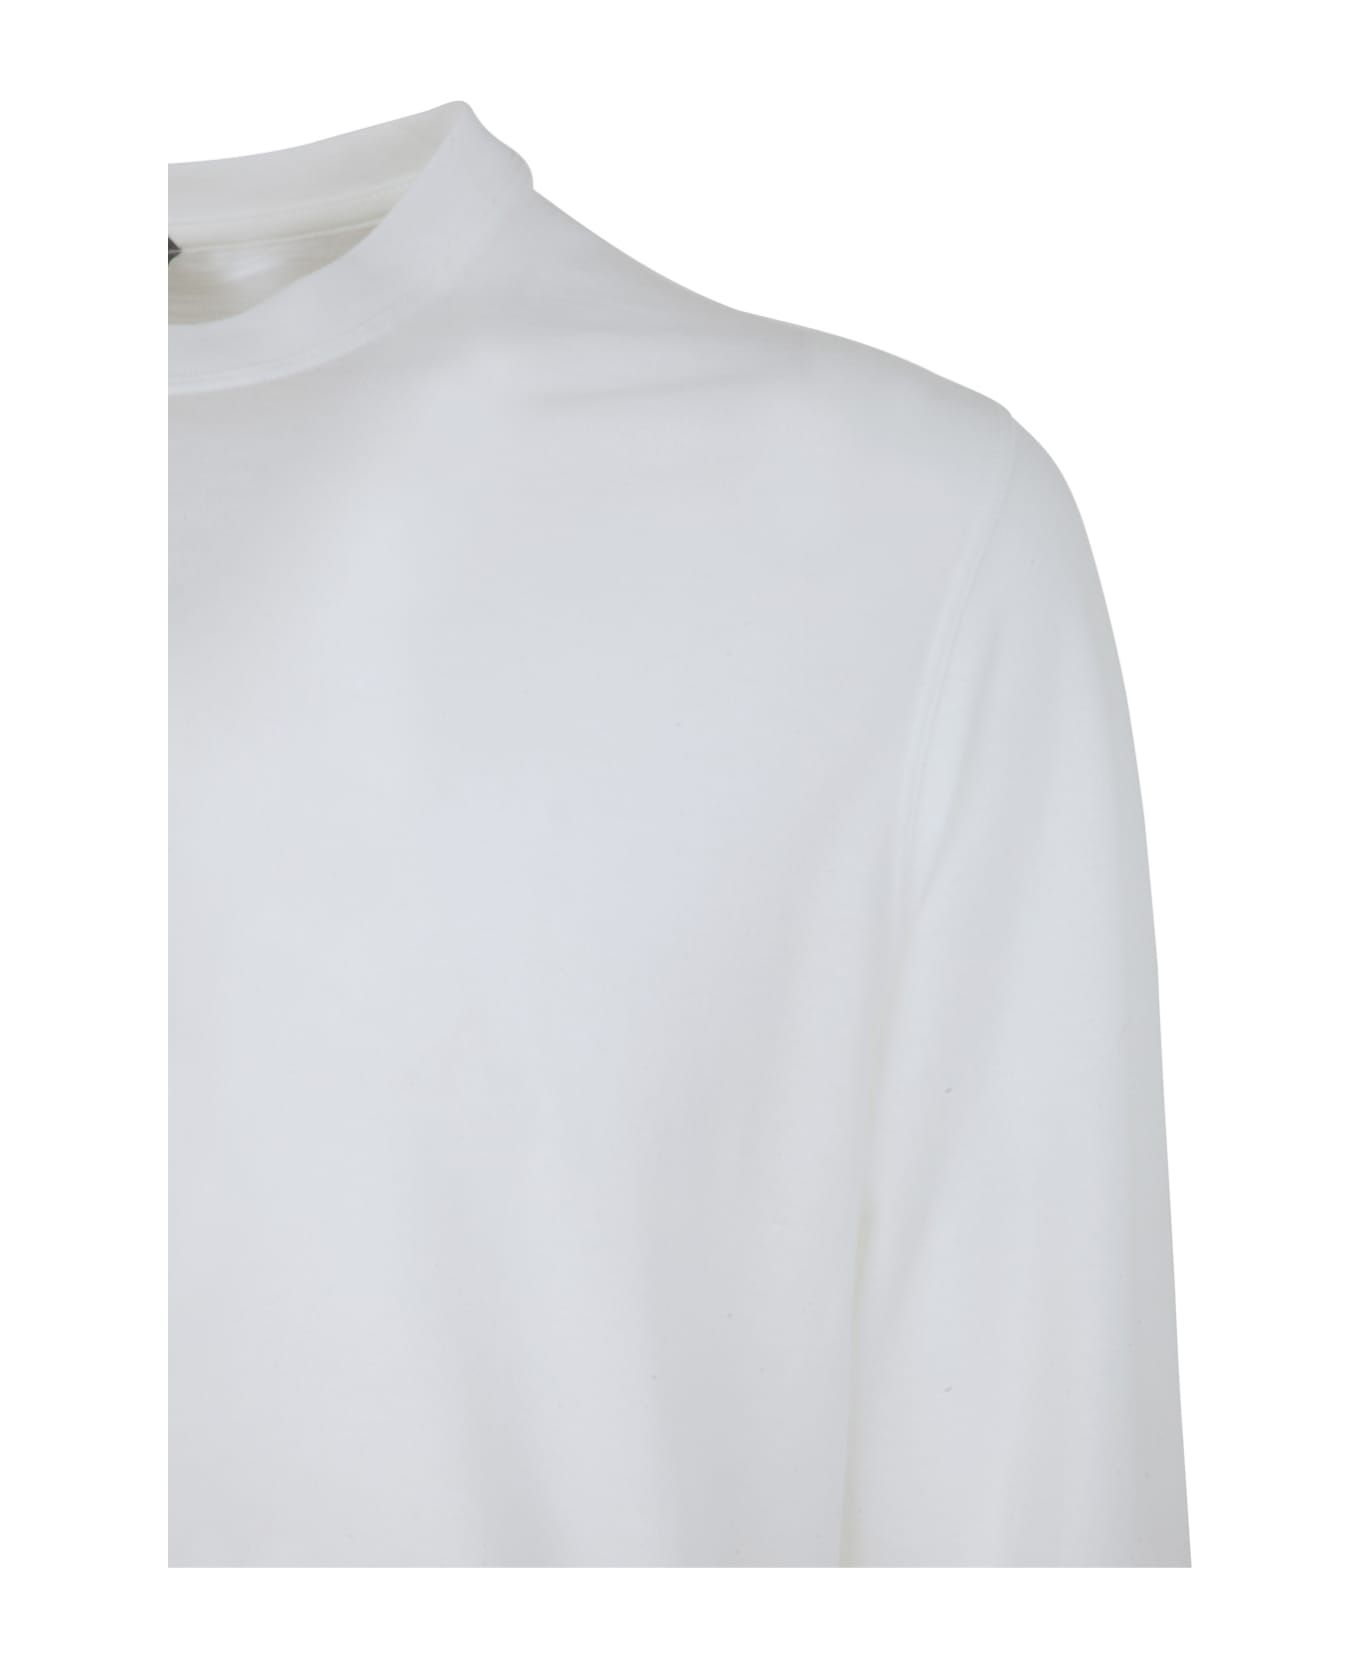 Zanone Long Sleeves T-shirt - White